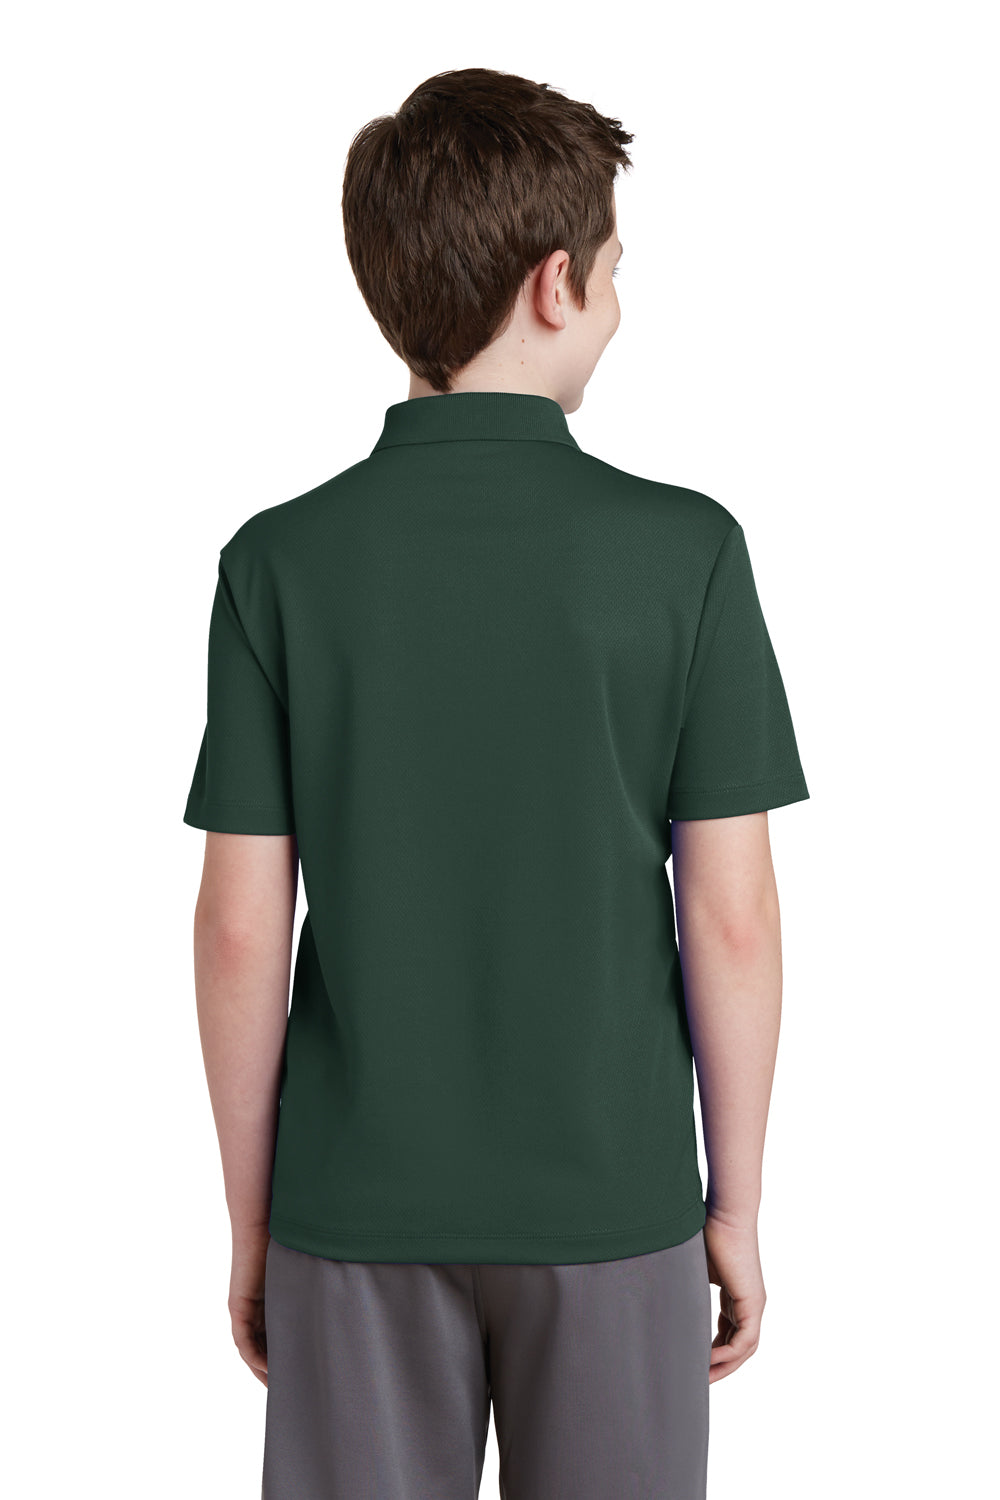 Sport-Tek YST640 Youth RacerMesh Moisture Wicking Short Sleeve Polo Shirt Forest Green Back